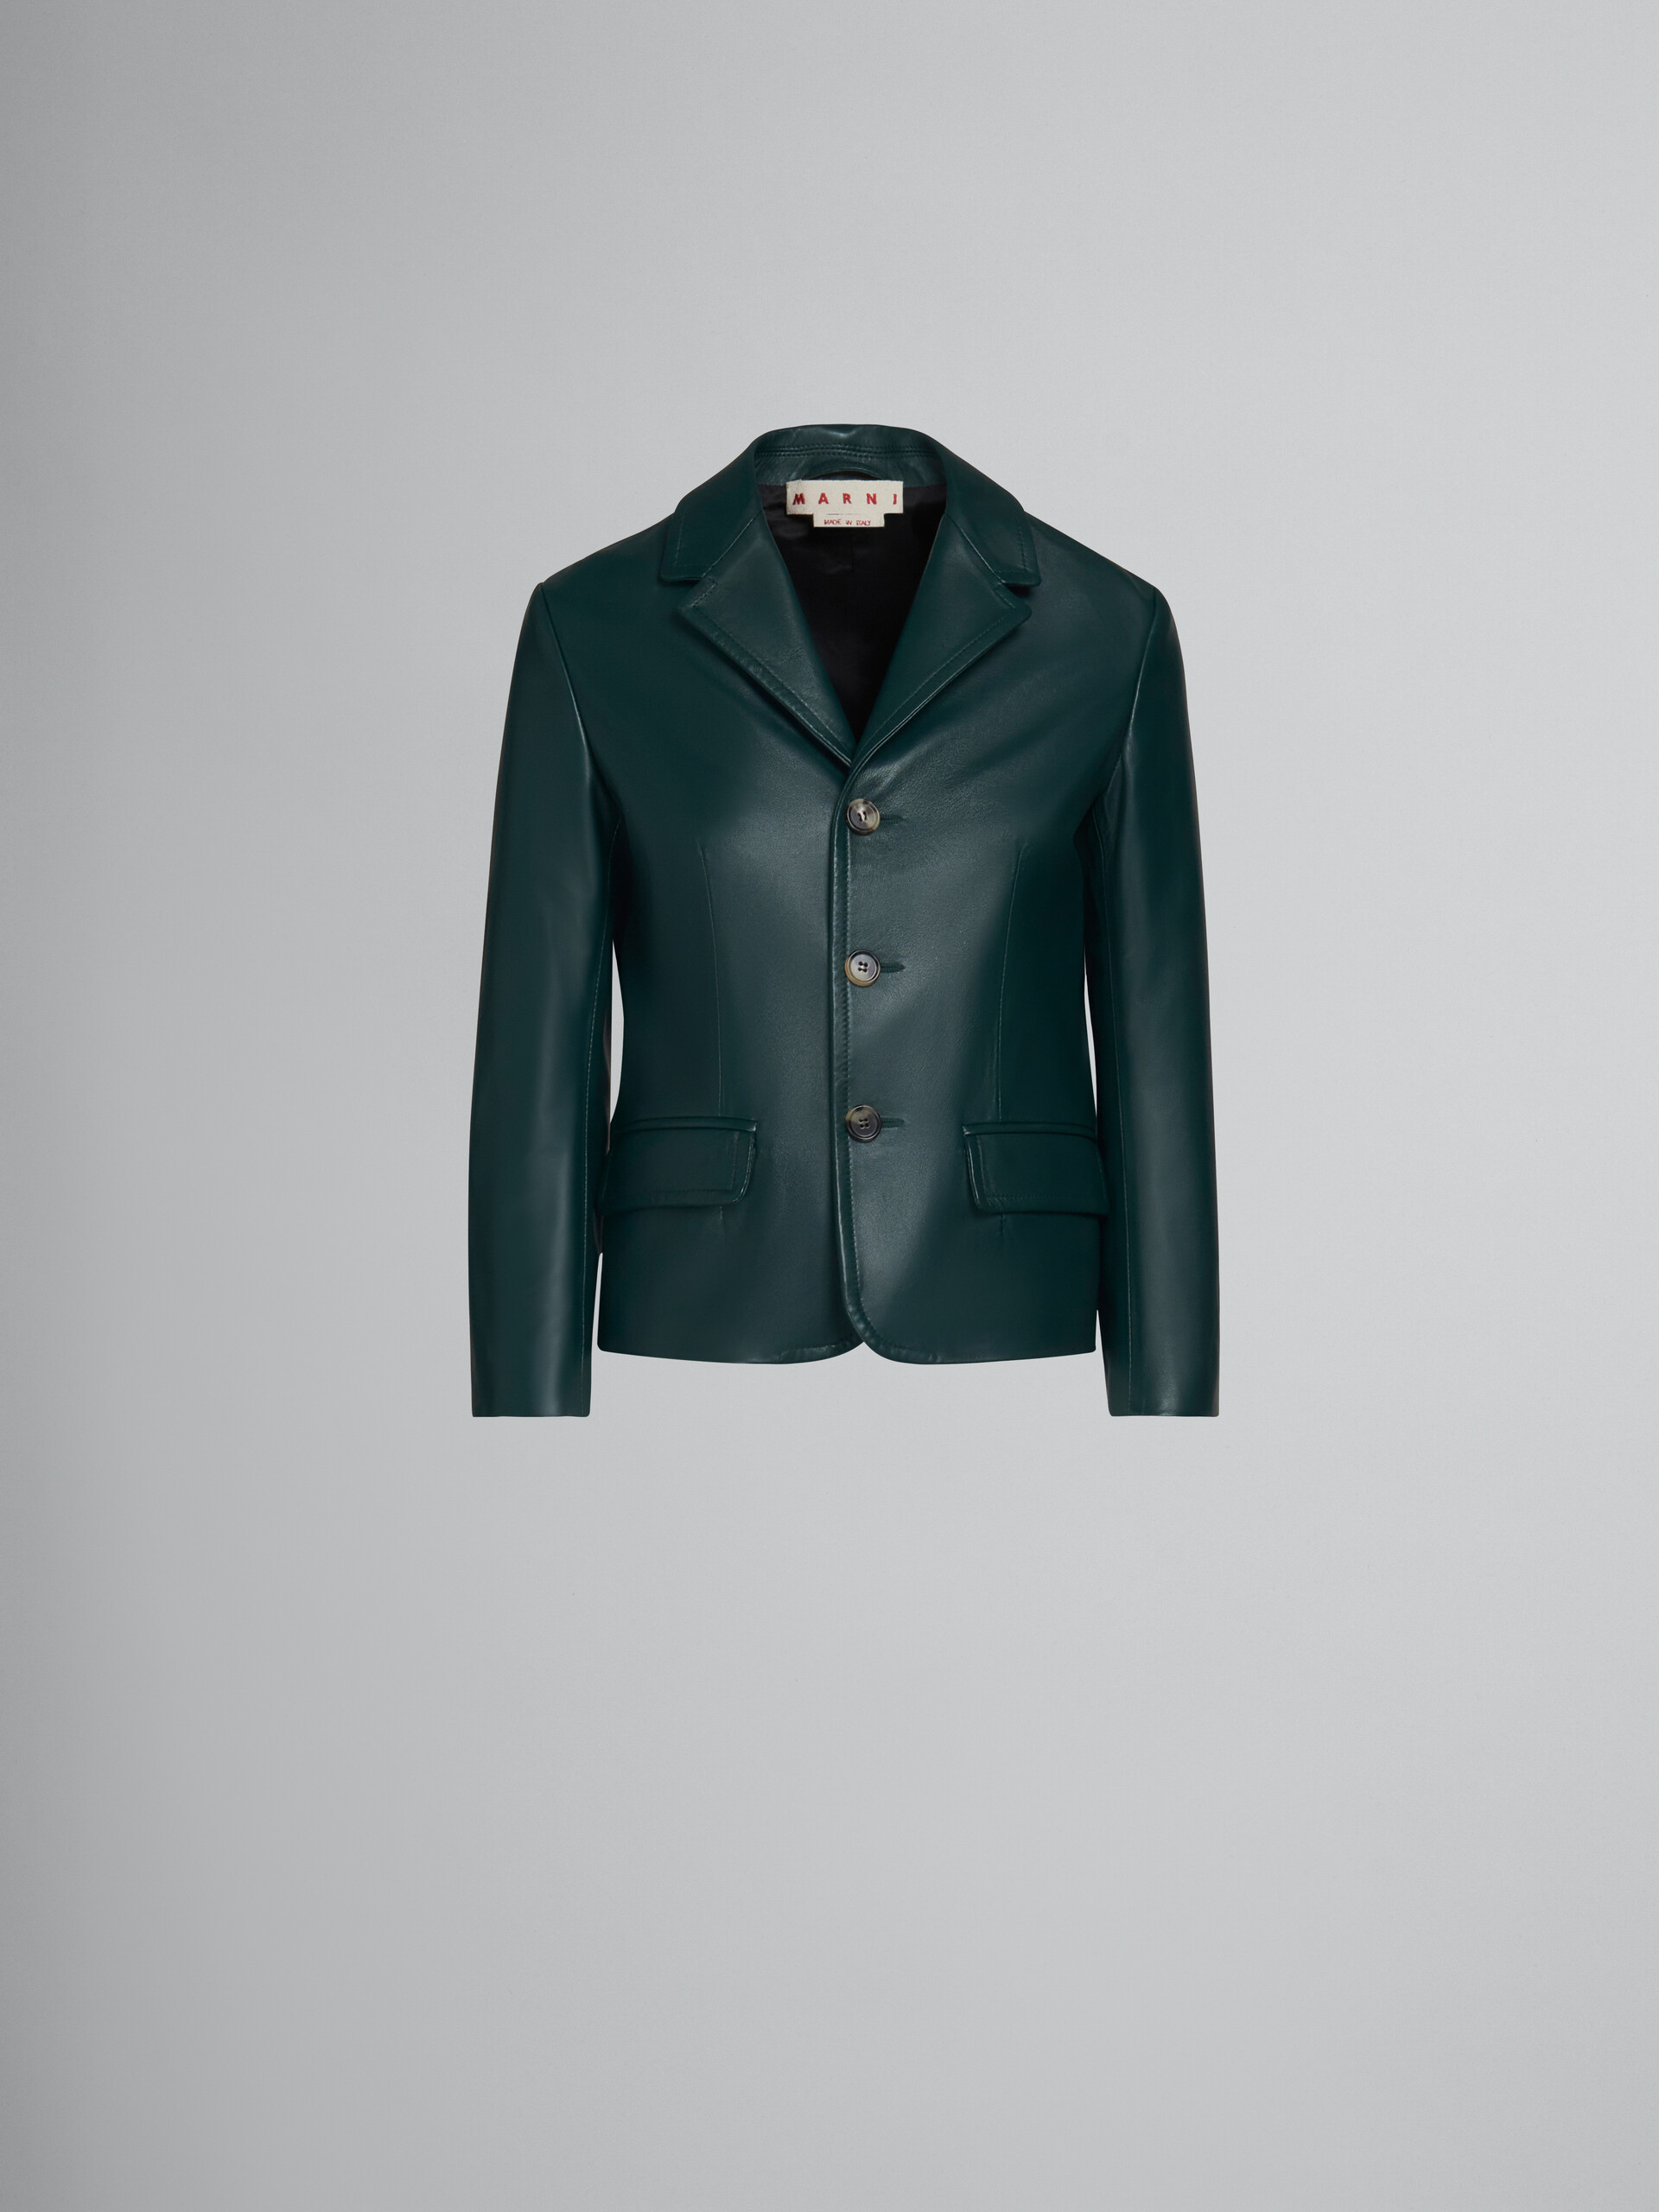 Green leather jacket - Jackets - Image 1